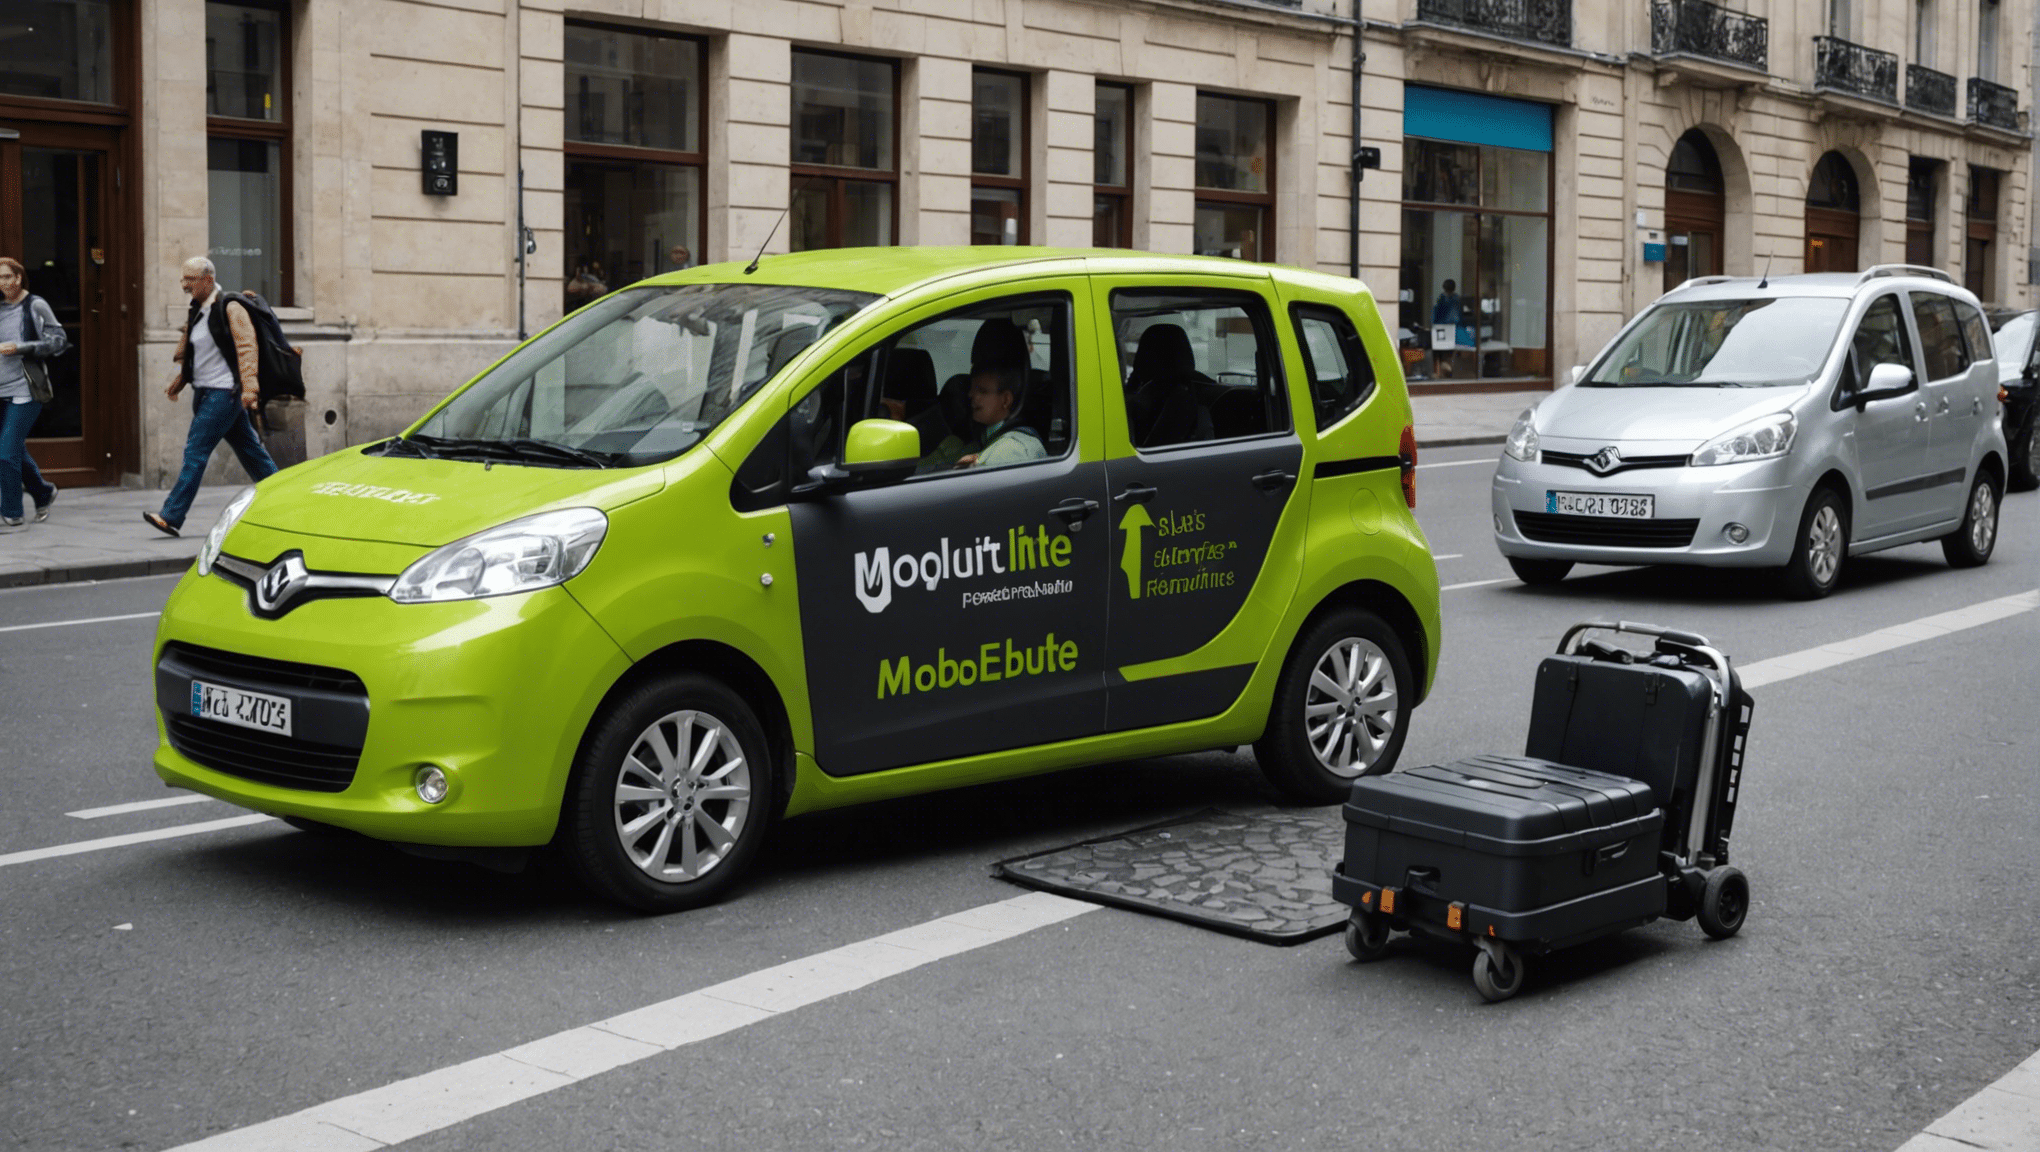 découvrez comment adapter les véhicules pour les personnes à mobilité réduite et faciliter leur mobilité au quotidien.